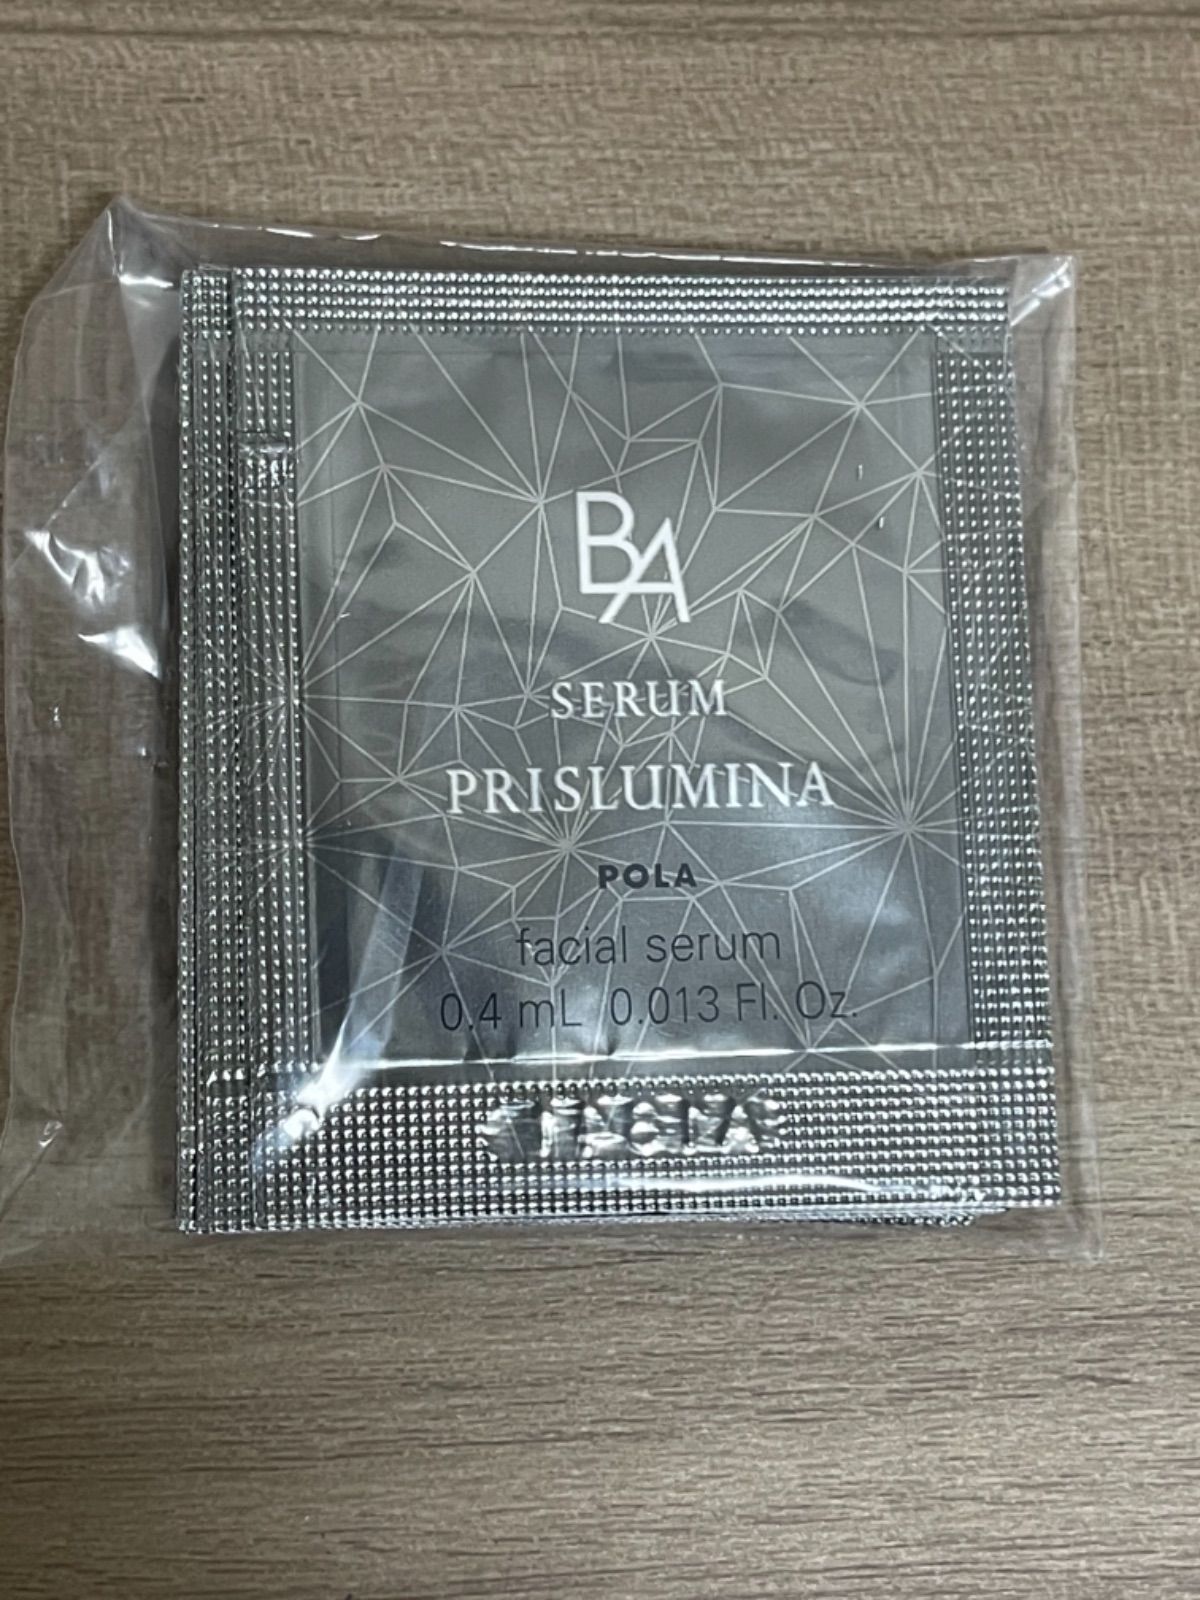 上質 ポーラ POLA 新BAセラムプリズルミナサンプル 0.4ml×50包 セット